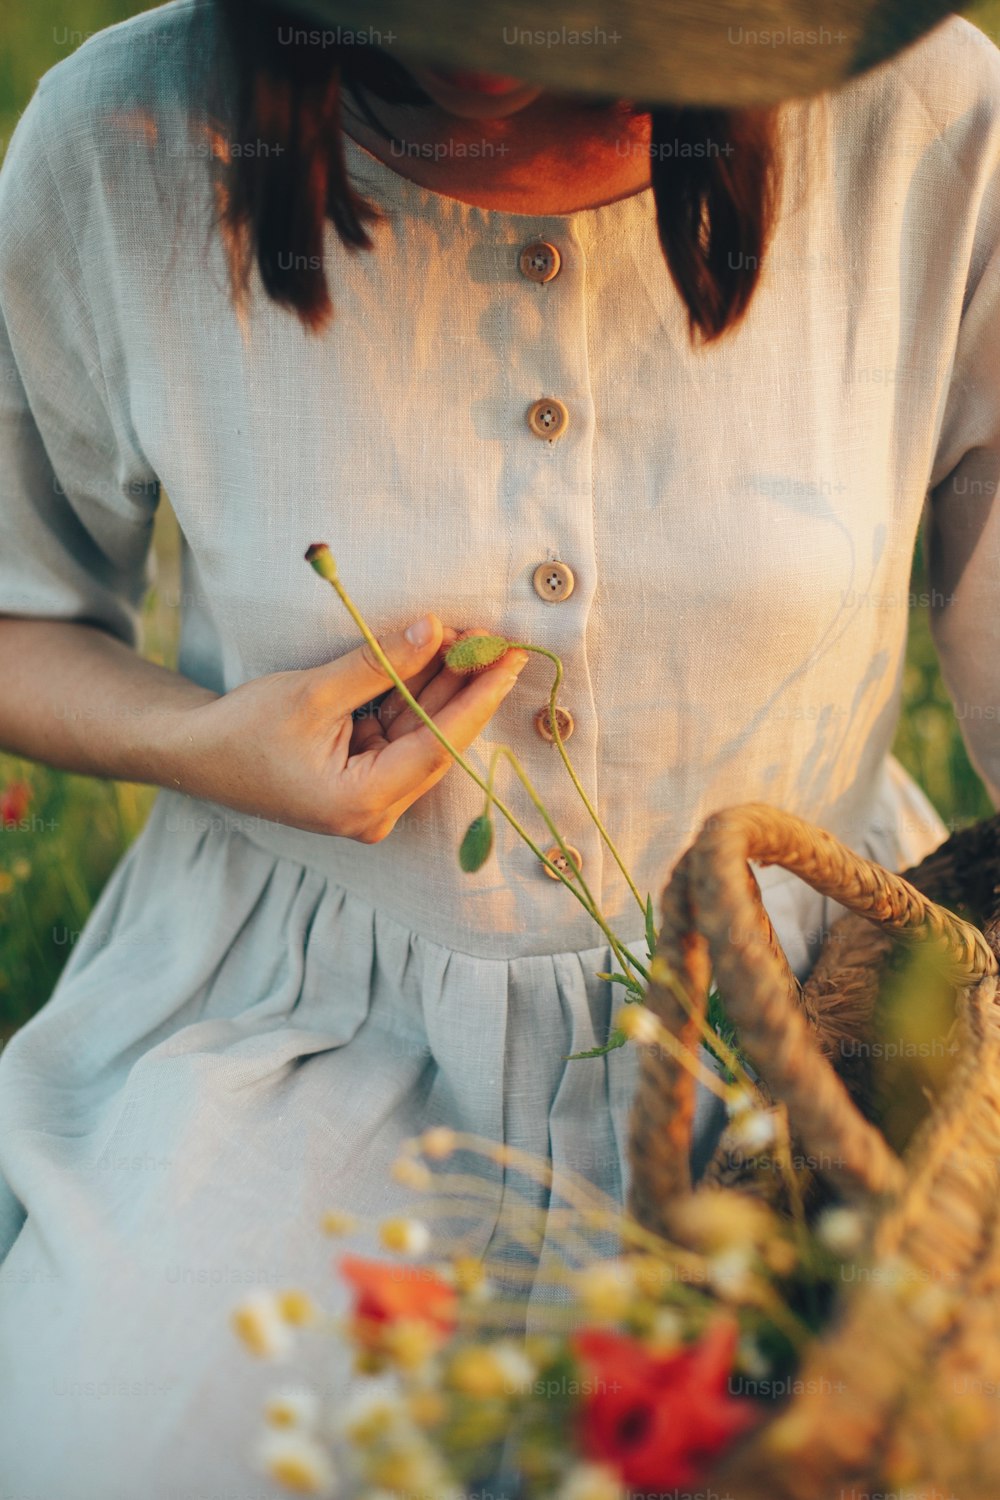 Fille élégante en robe de lin cueillant des fleurs dans un panier de paille rustique, assise dans une prairie de coquelicots au coucher du soleil. Femme bohème tenant un bourgeon de fleurs sauvages au soleil chaud dans un champ d’été. Atmosphérique